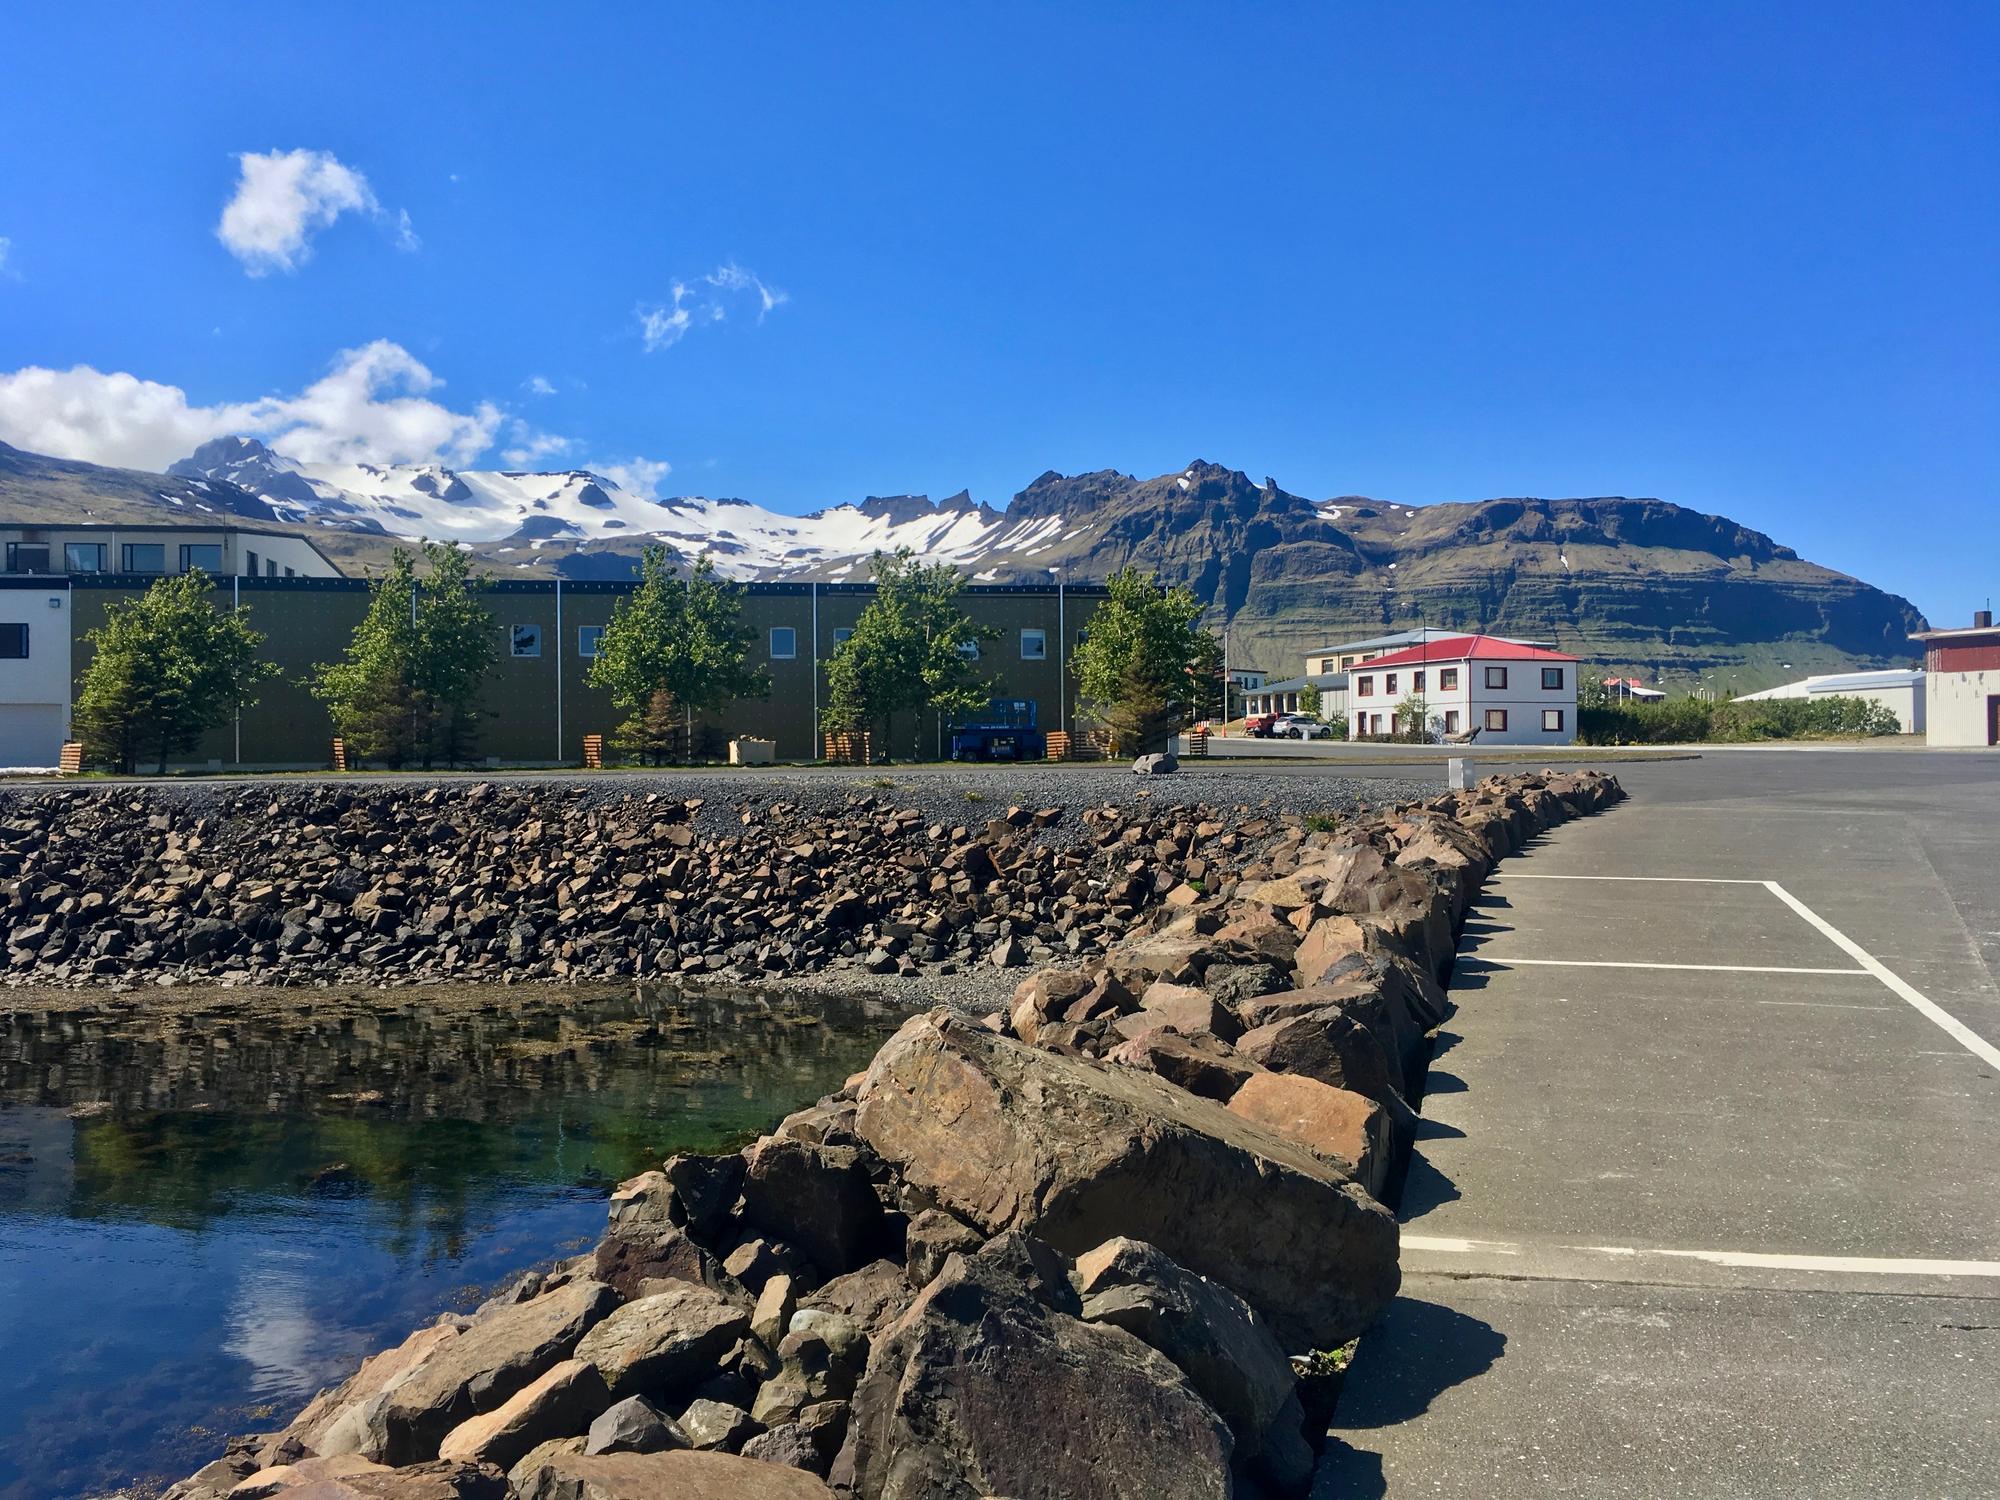 🇮🇸 Грюндарфьордюр, Исландия, июнь 2019.